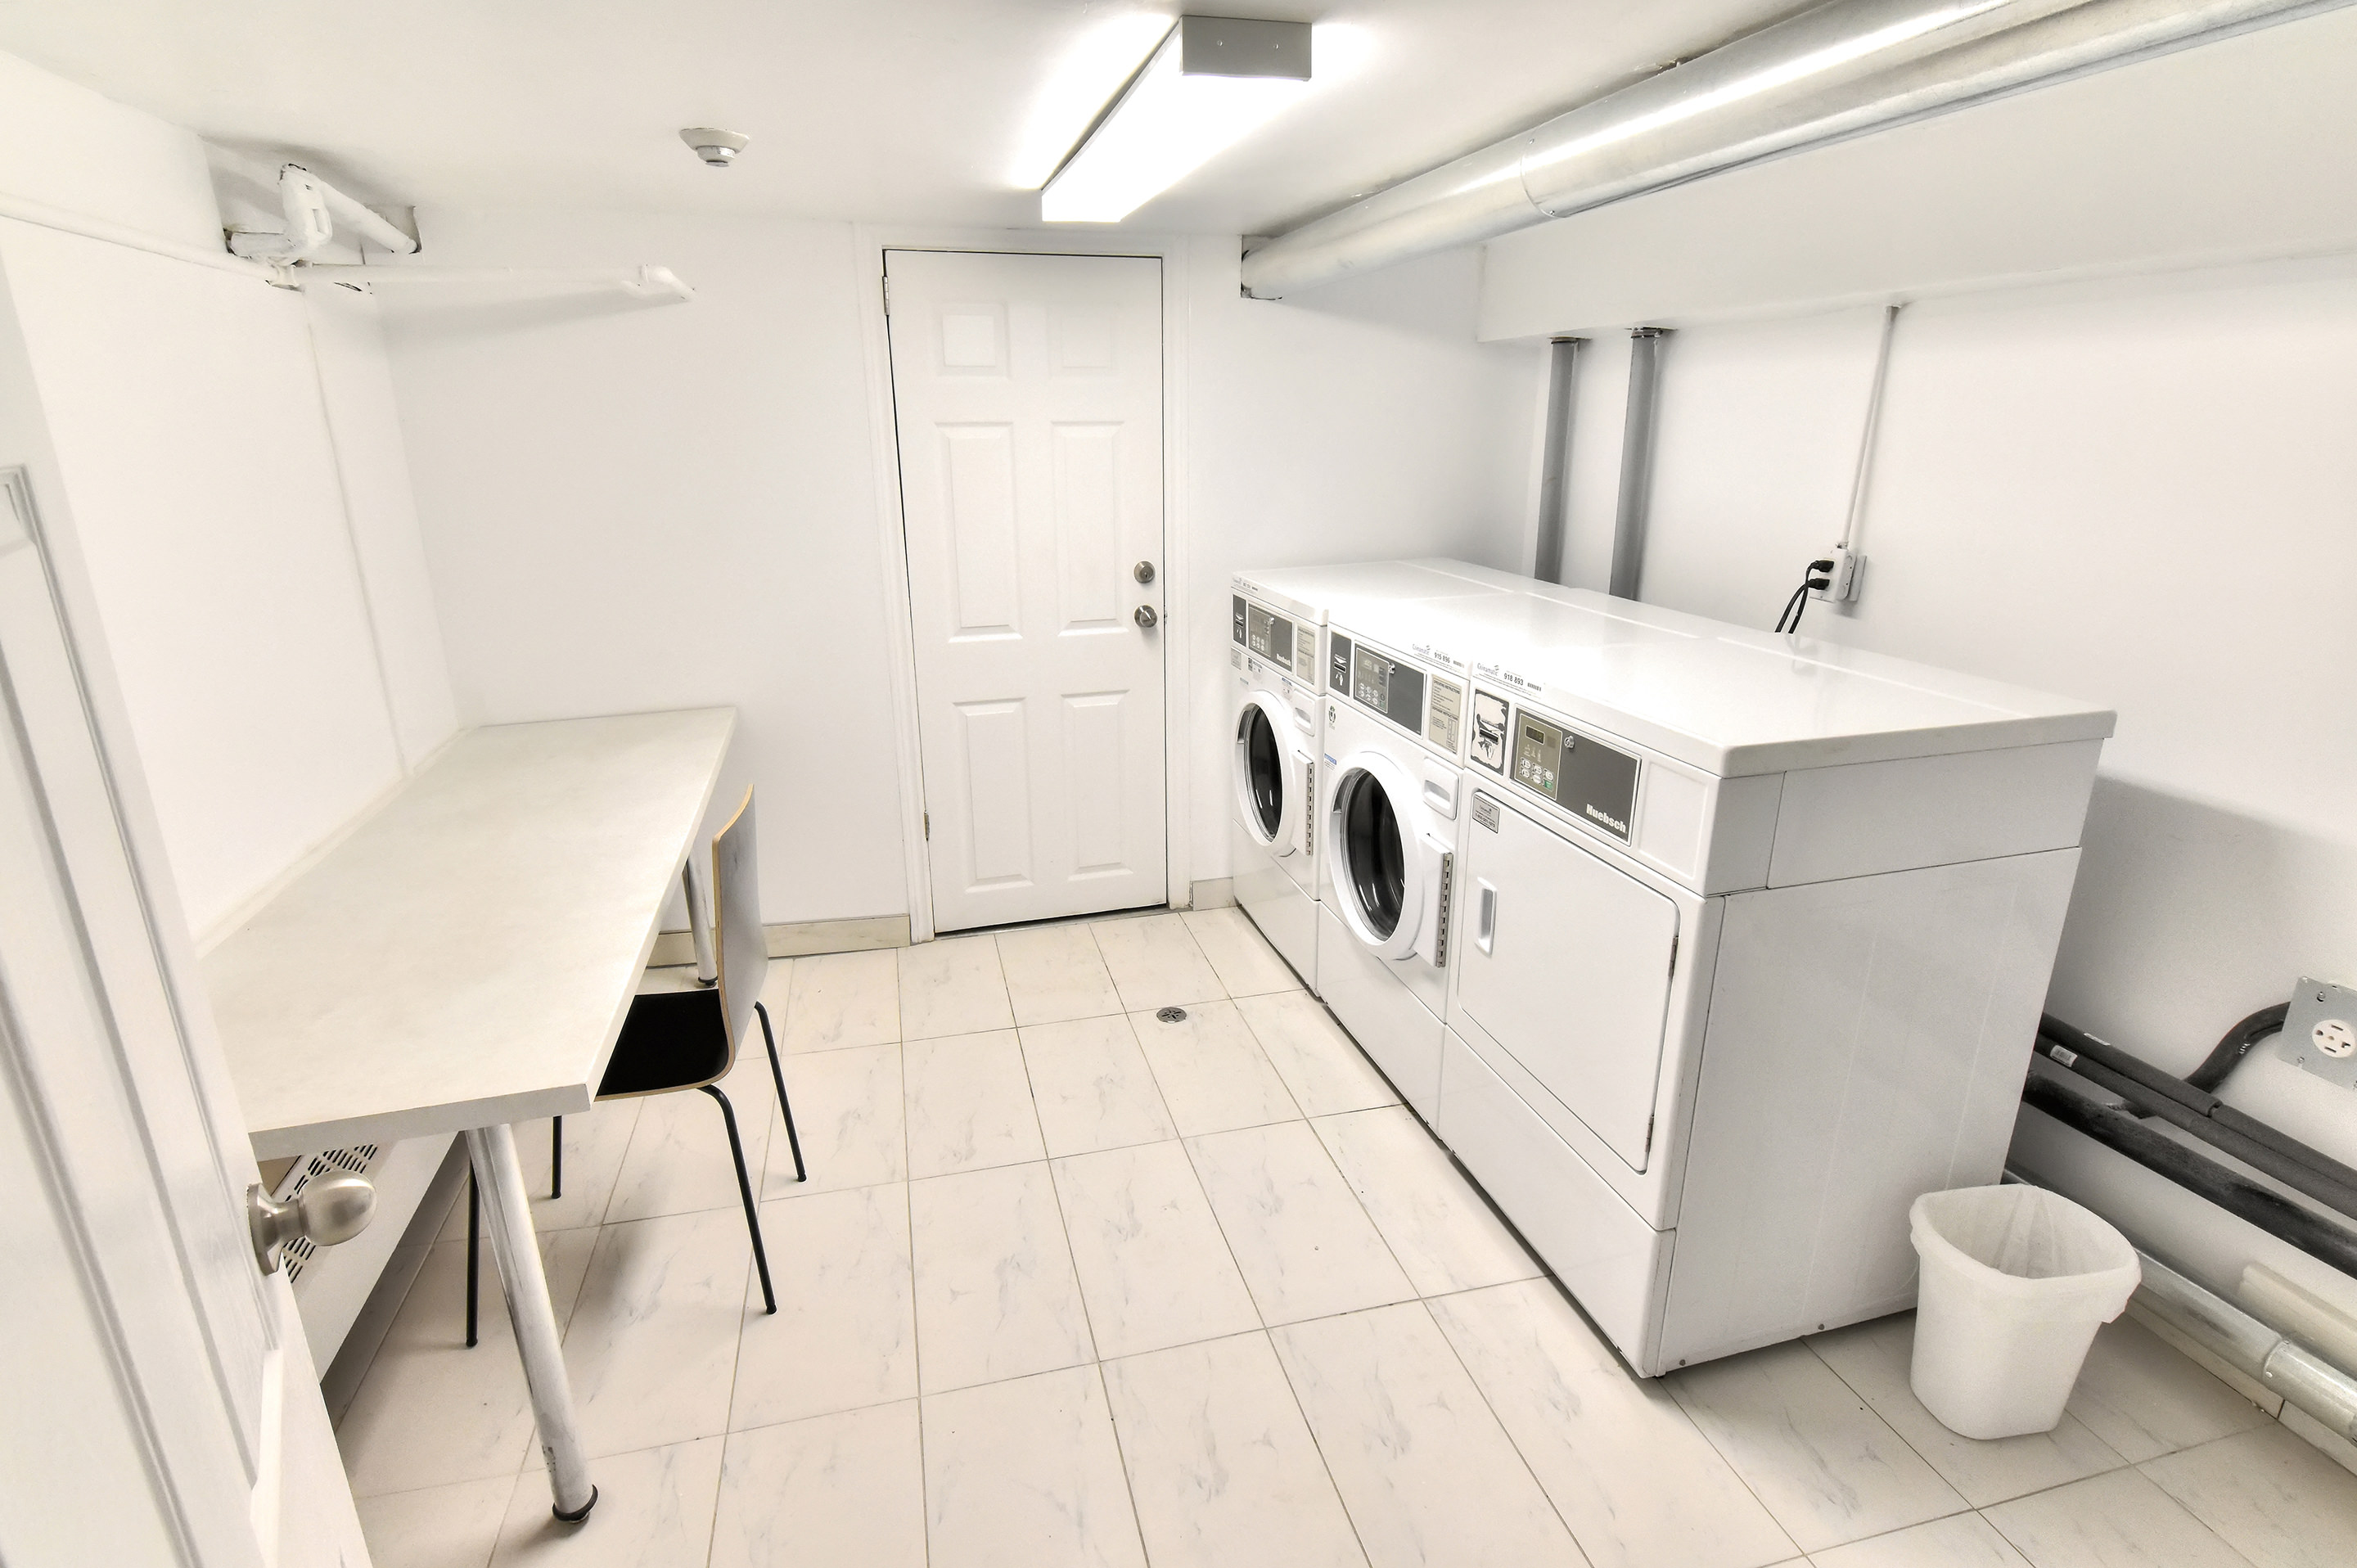 1 bedroom Apartments for rent in Notre-Dame-de-Grace at 2350 Rue Mariette - Photo 11 - RentersPages – L2278